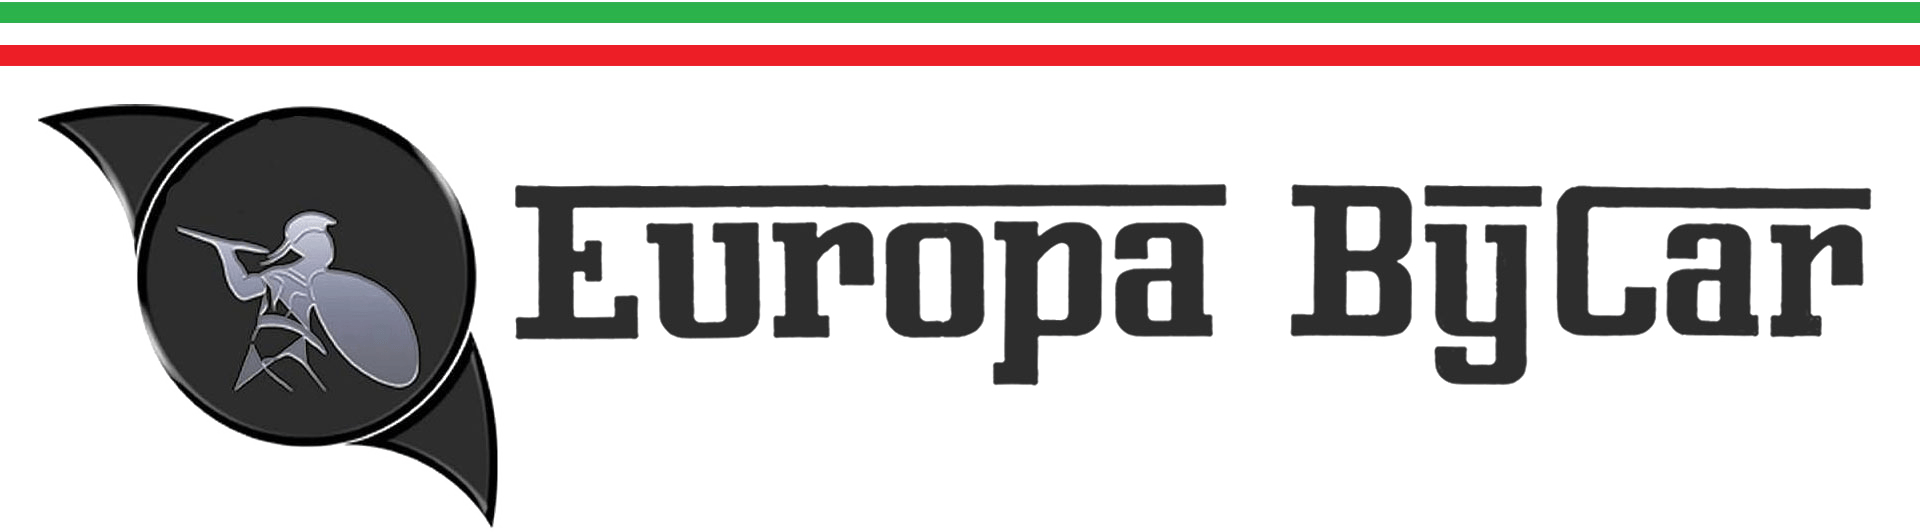 F.F. EUROPA BY CAR - LOGO